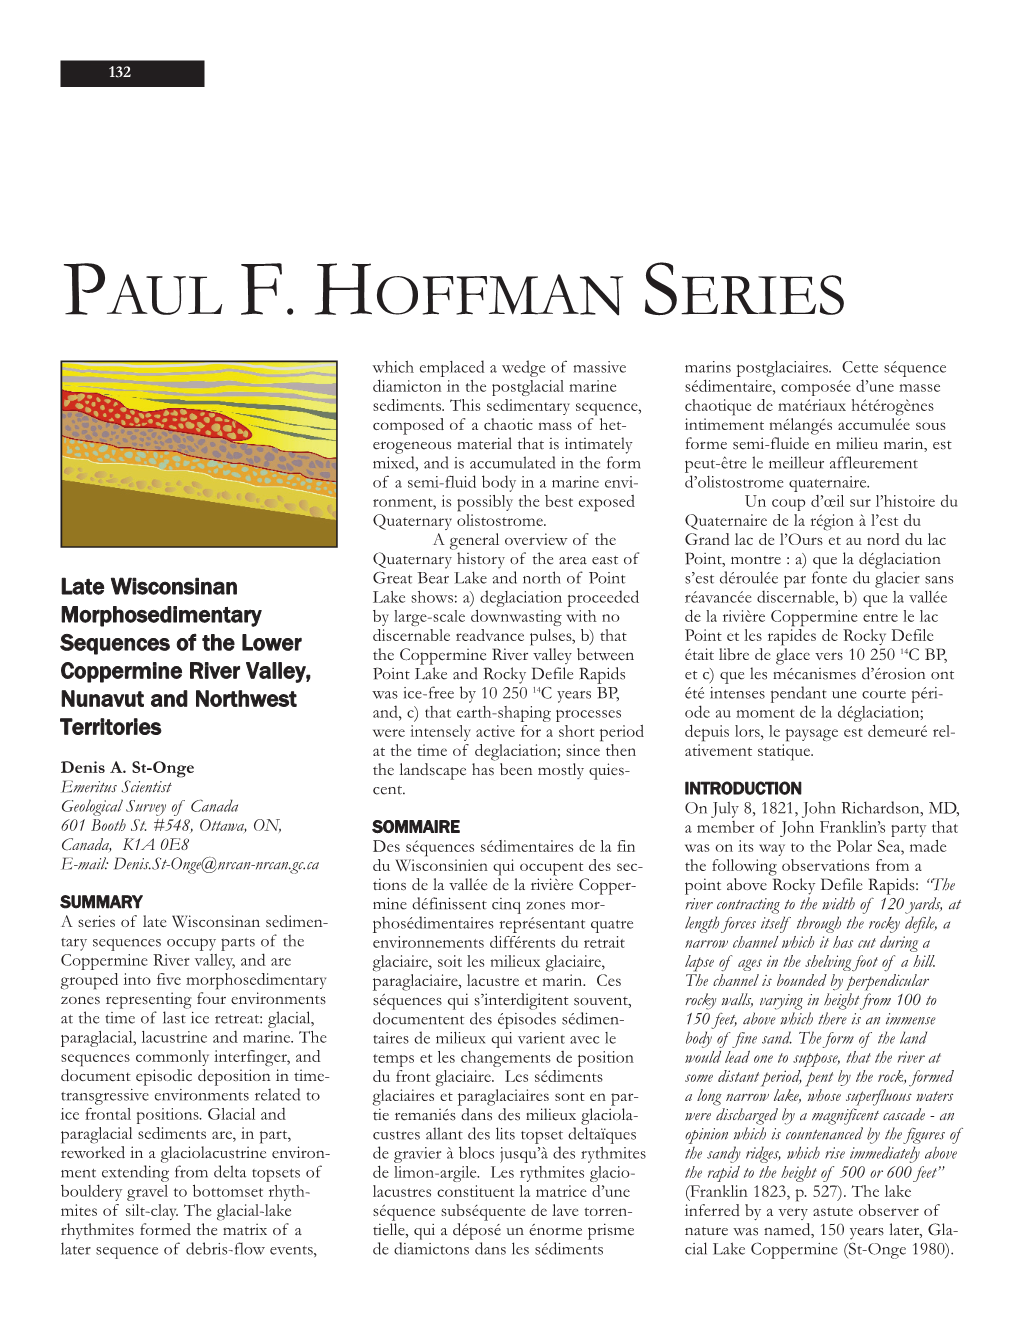 Paul F. Hoffman Series